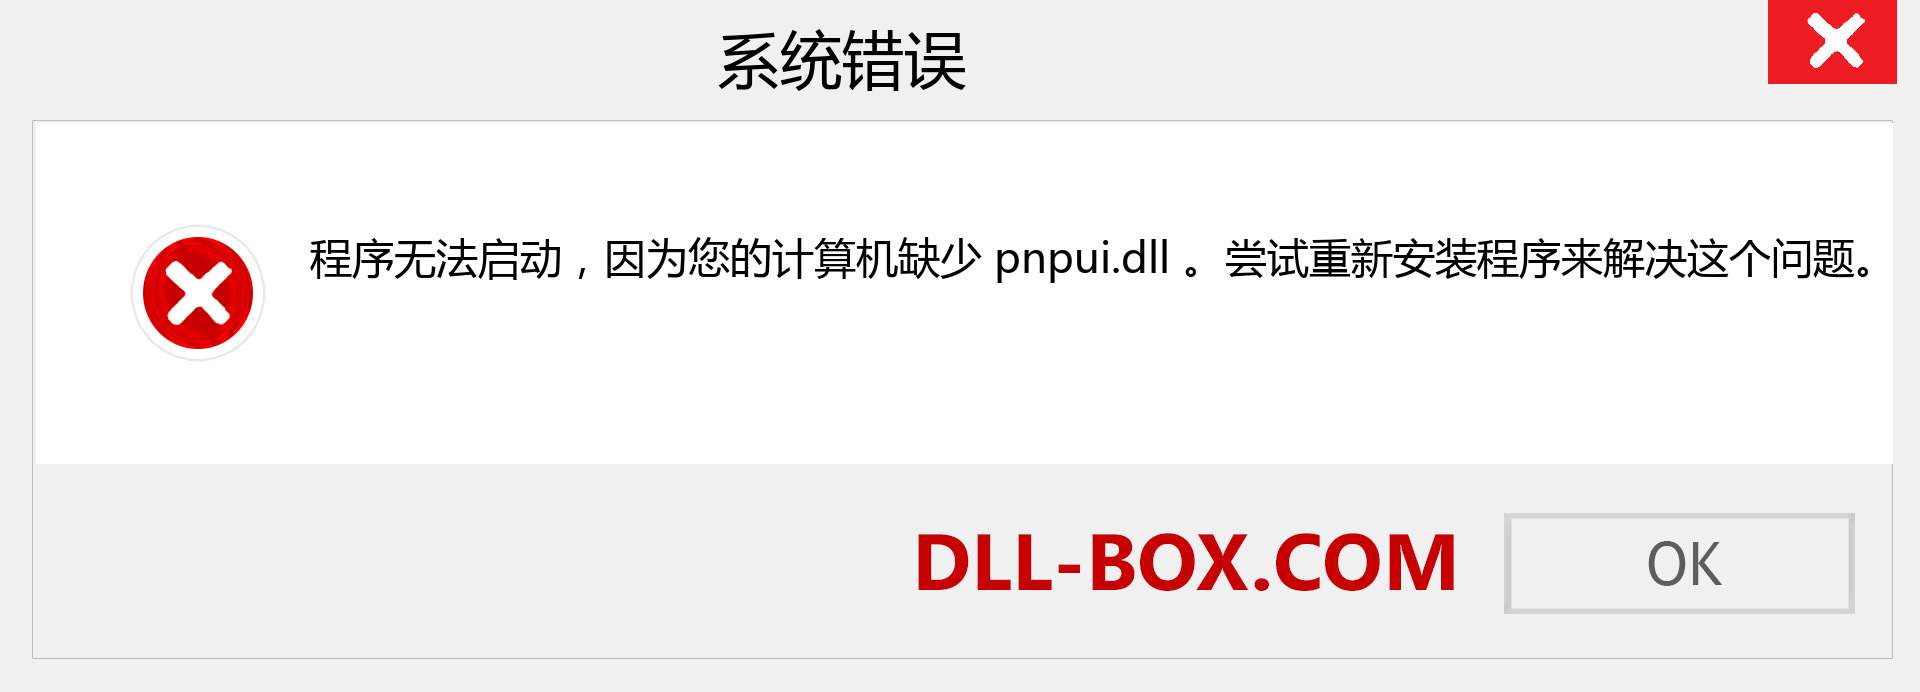 pnpui.dll 文件丢失？。 适用于 Windows 7、8、10 的下载 - 修复 Windows、照片、图像上的 pnpui dll 丢失错误